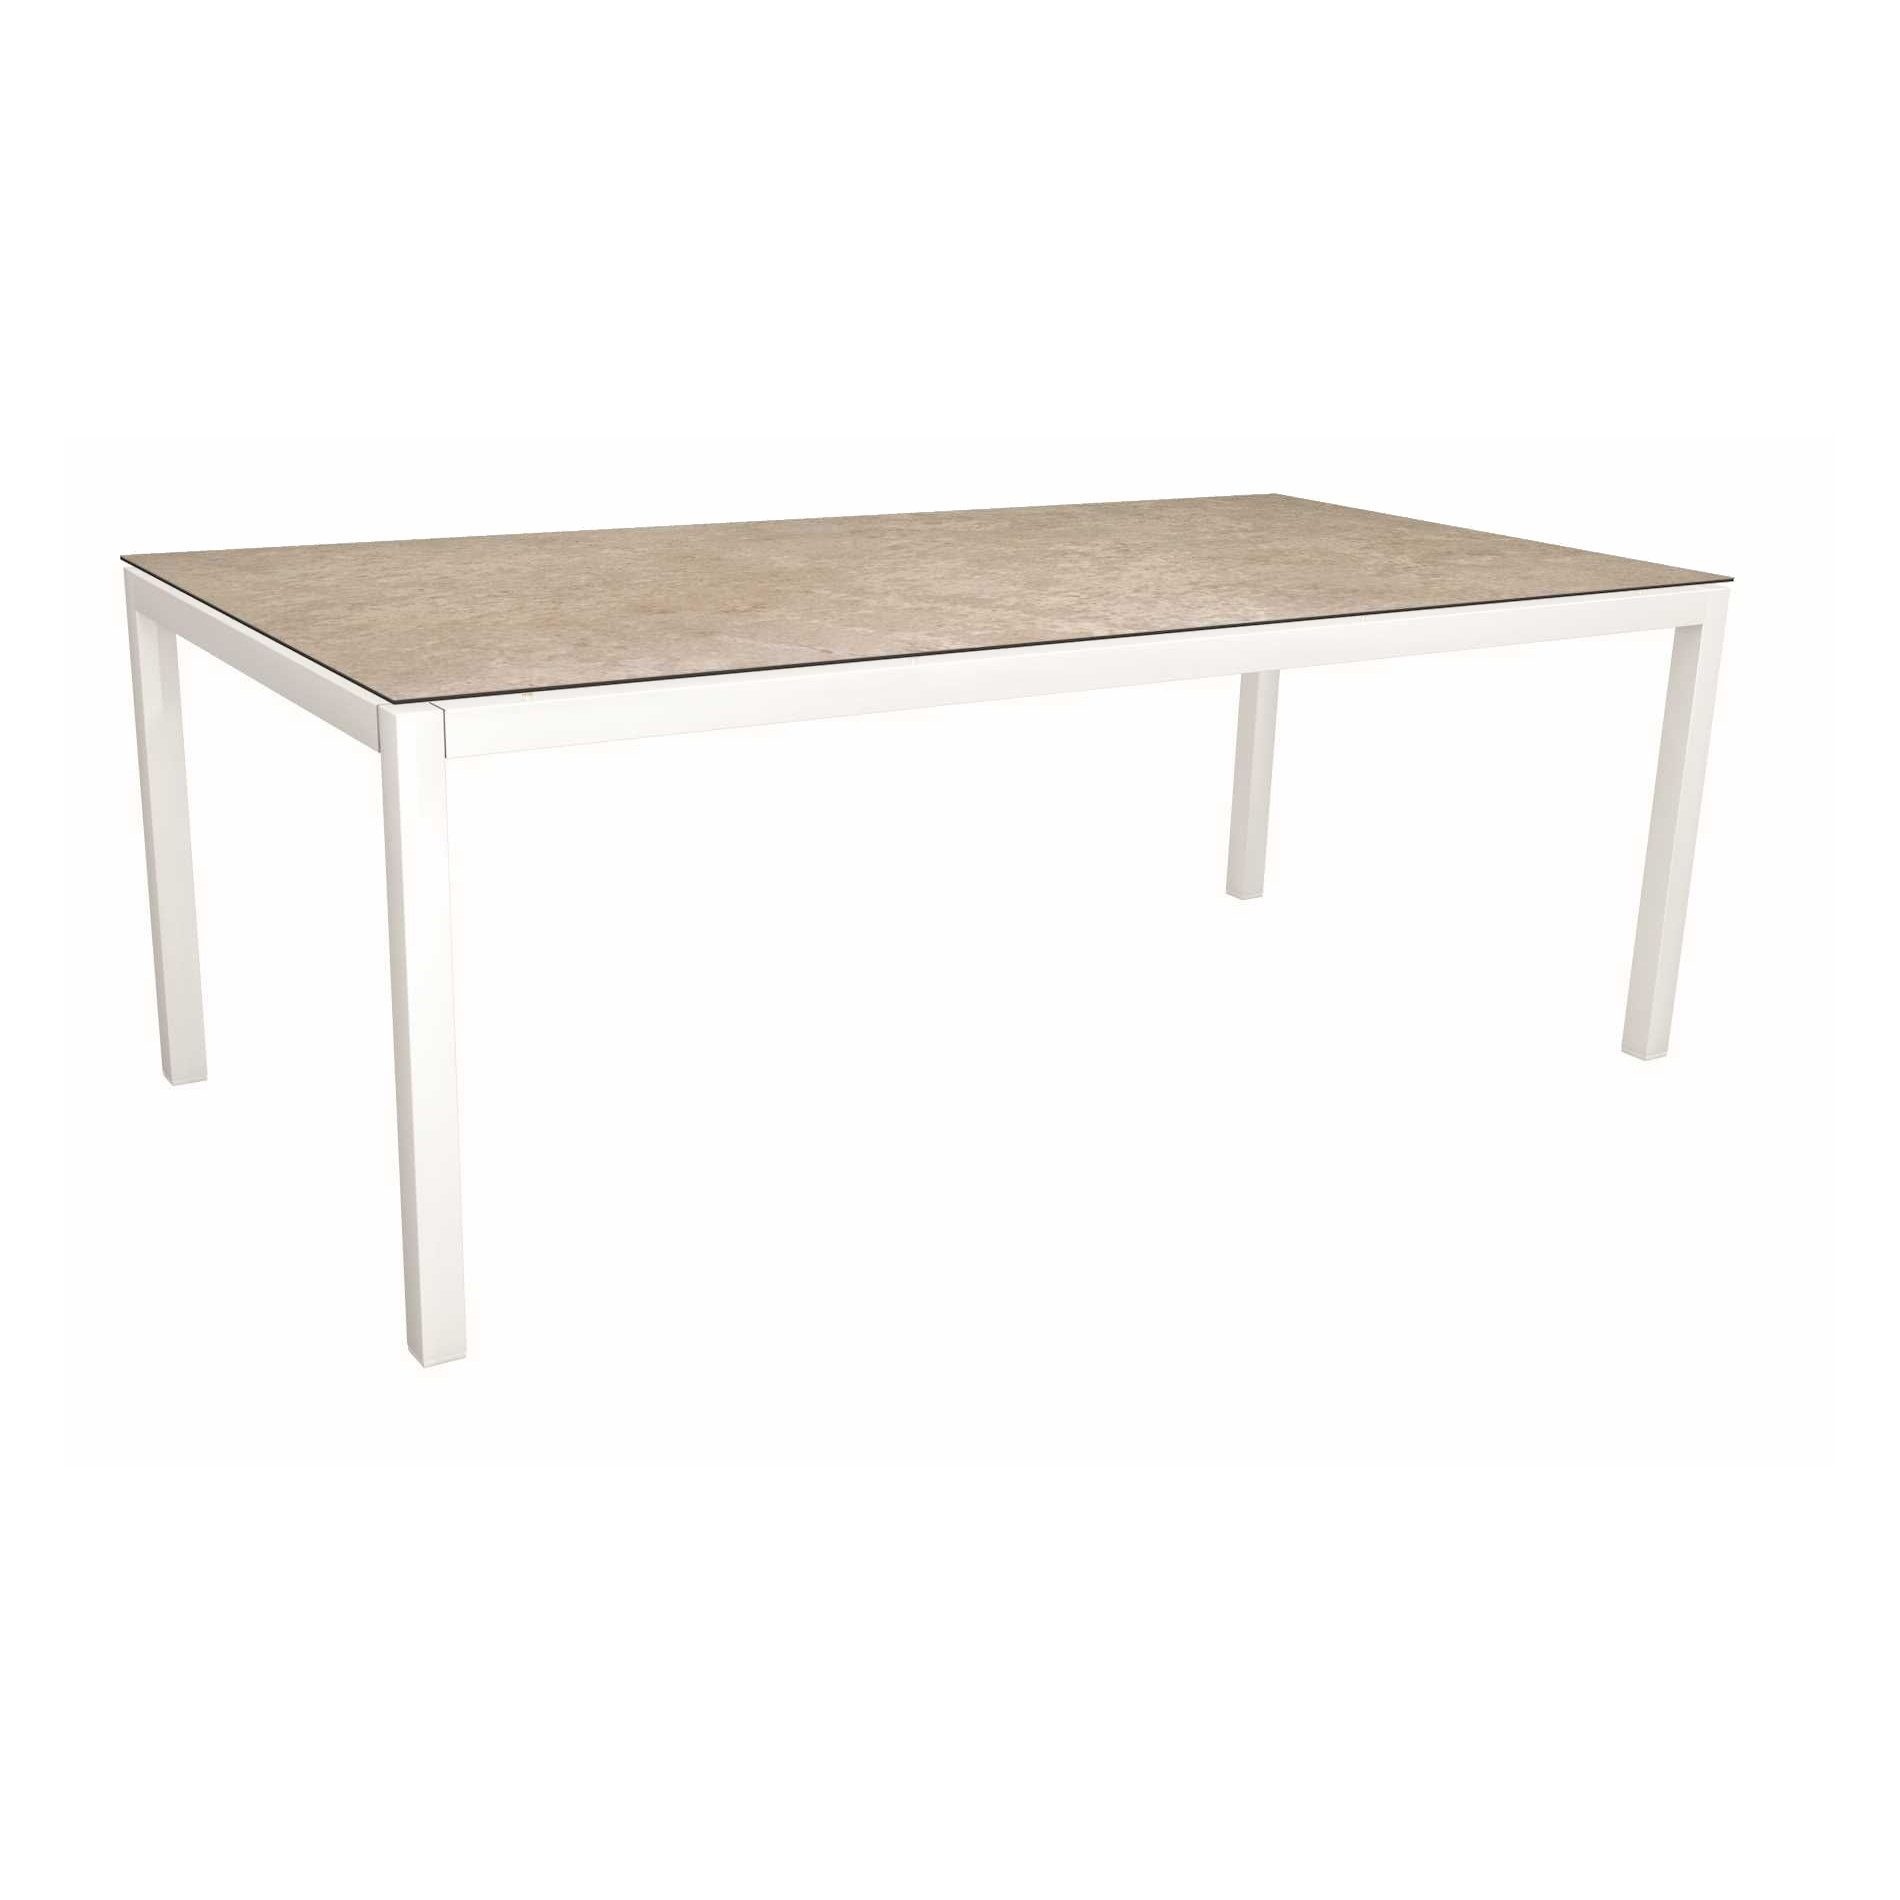 Stern Tischsystem, Gestell Aluminium weiß, Tischplatte HPL Vintage Shell, Größe: 200X100 cm